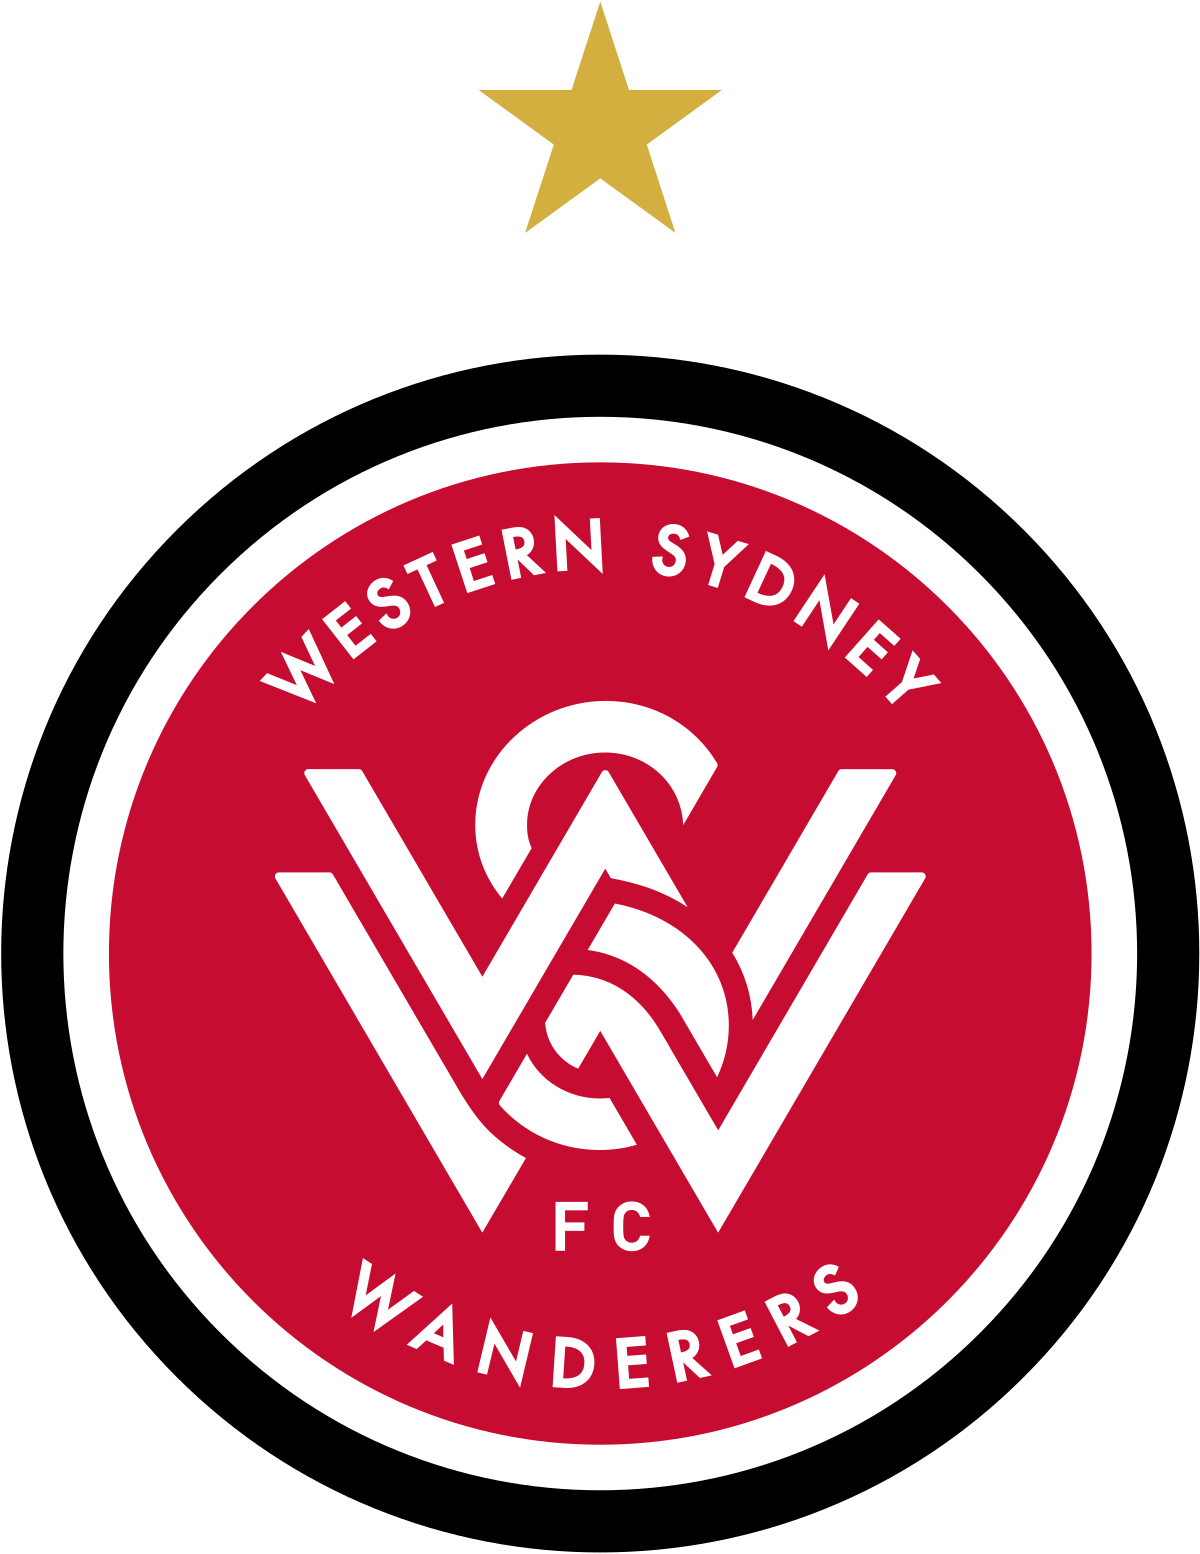 Western Sydney-2 logo